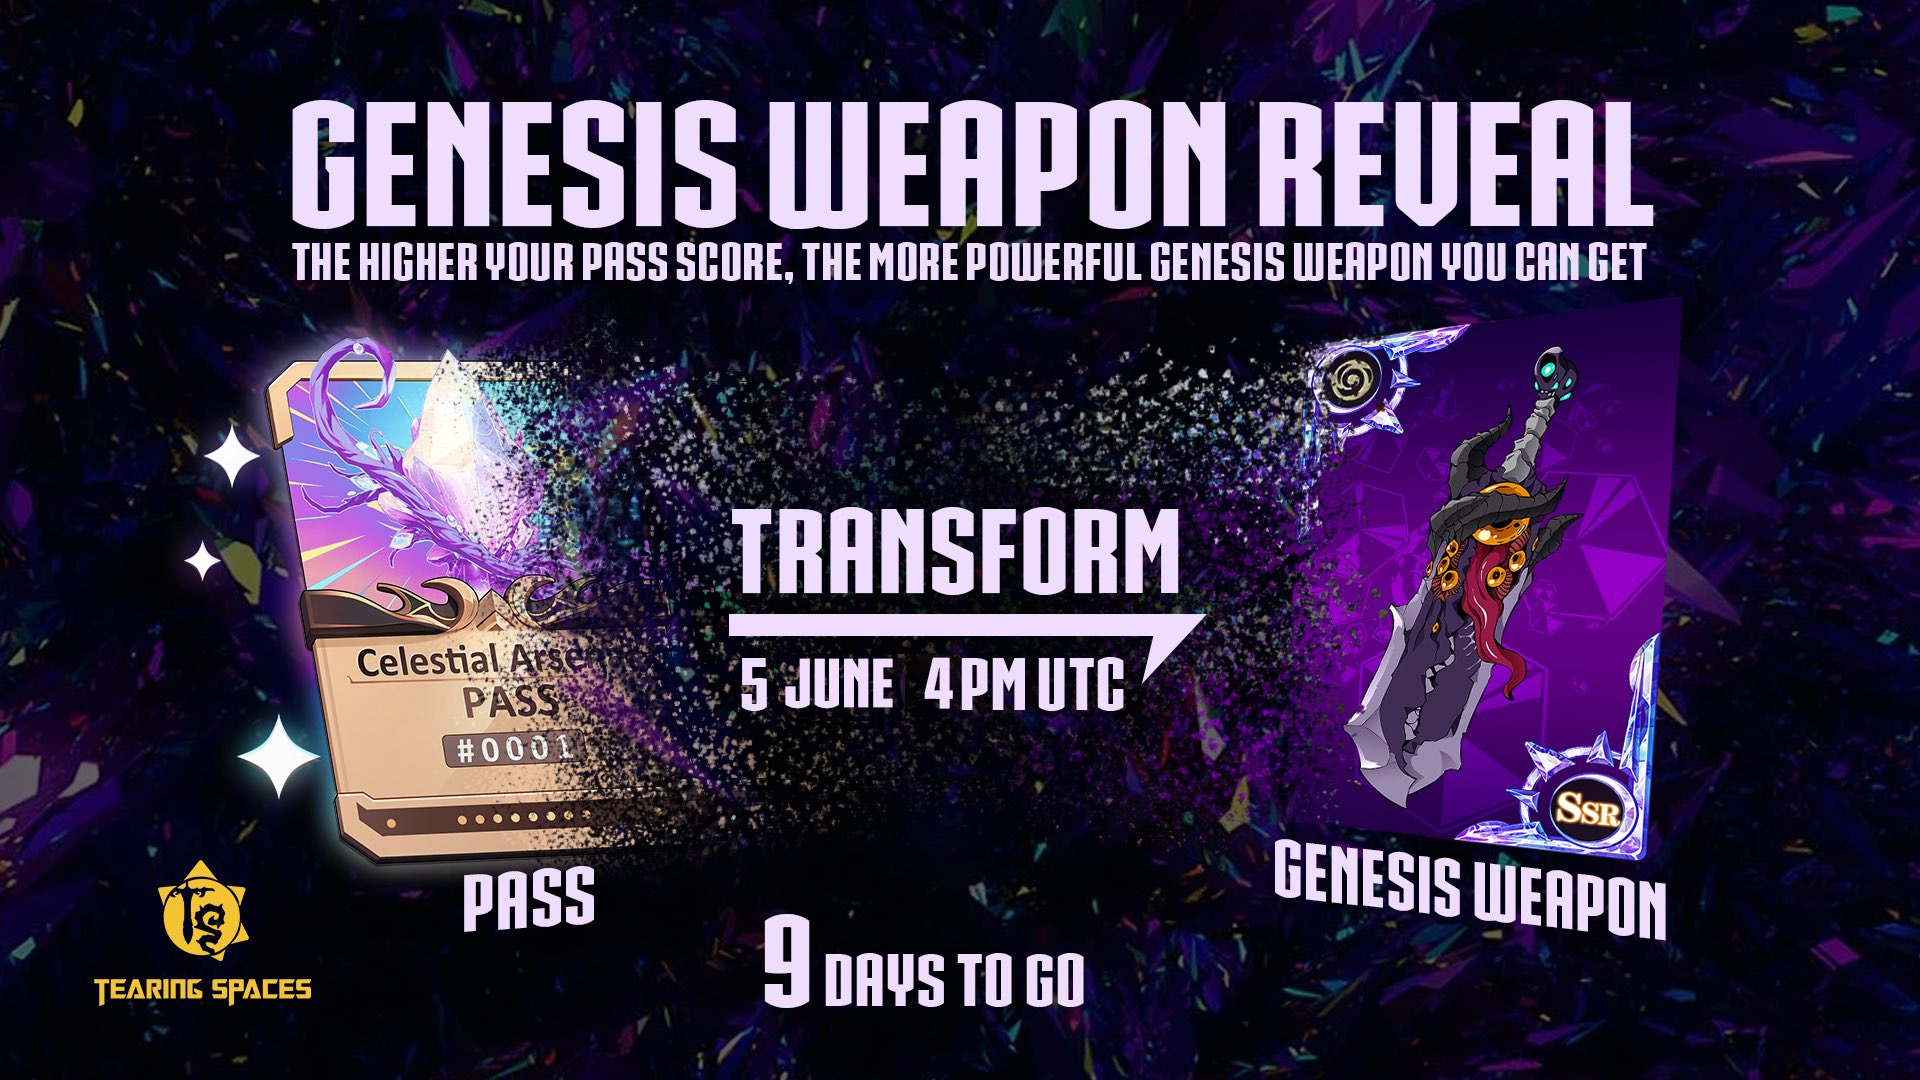 Tearing Spaces Genesis Weapon banner